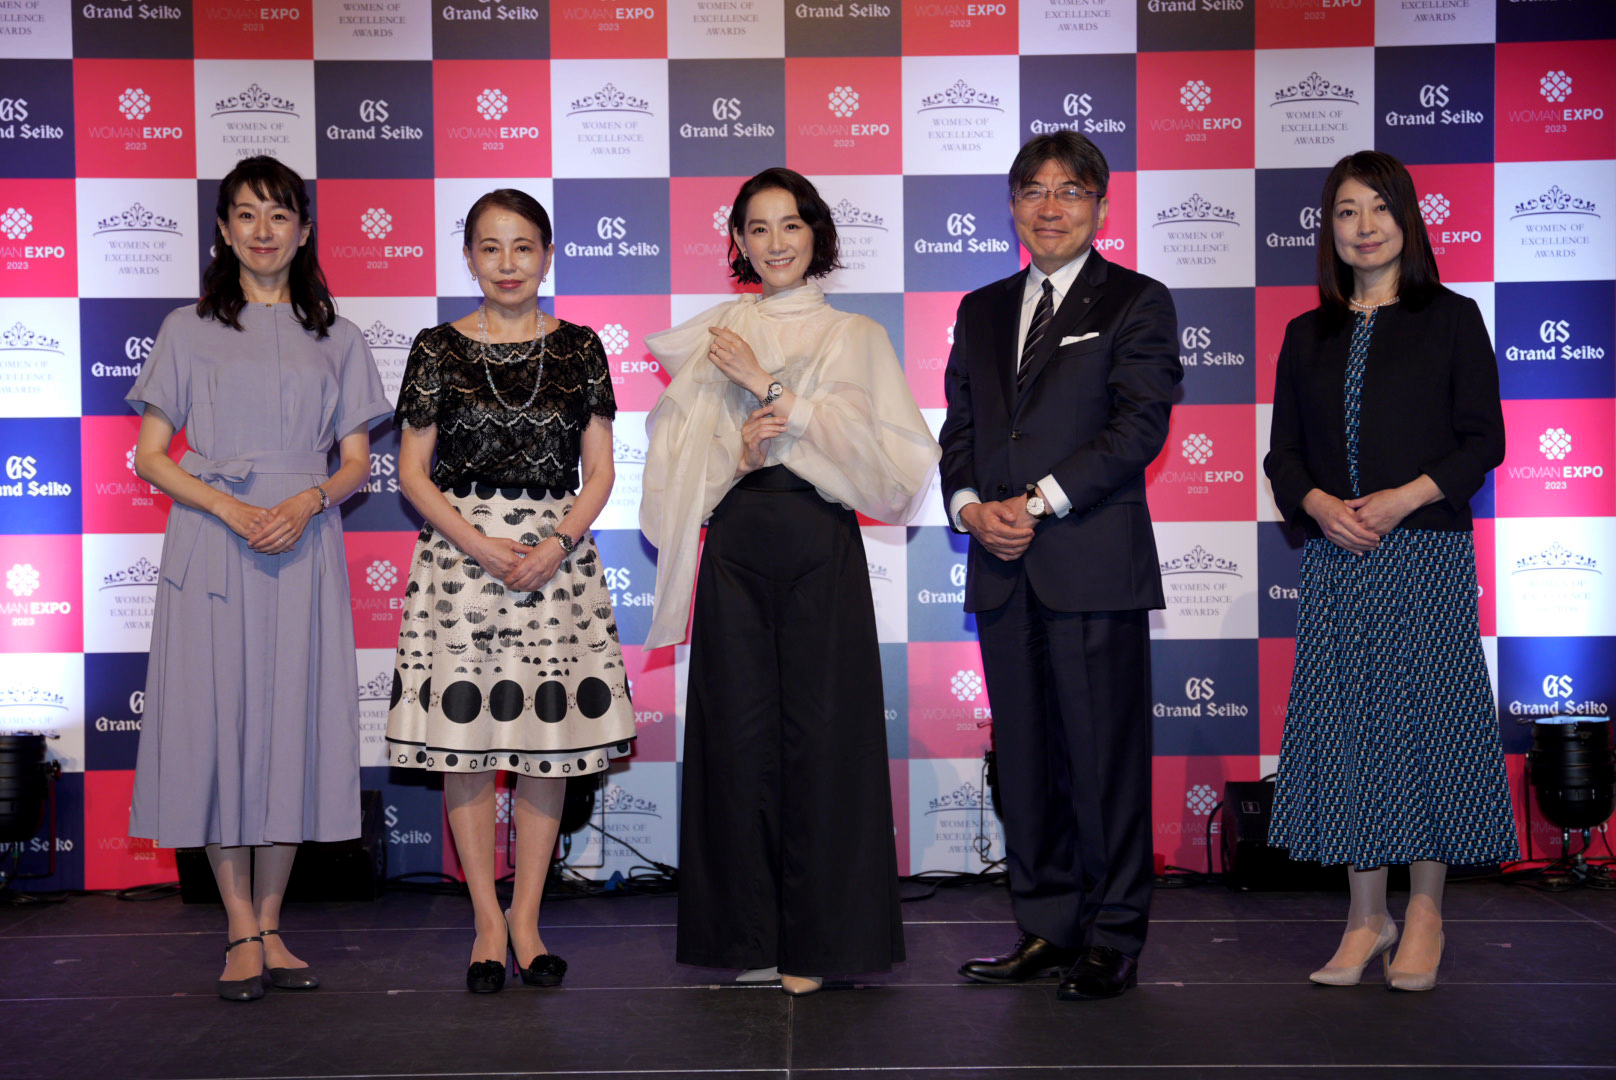 第 9 回「Women of Excellence Awards」Presented by Grand Seiko デザイナー 篠原ともえさんが受賞